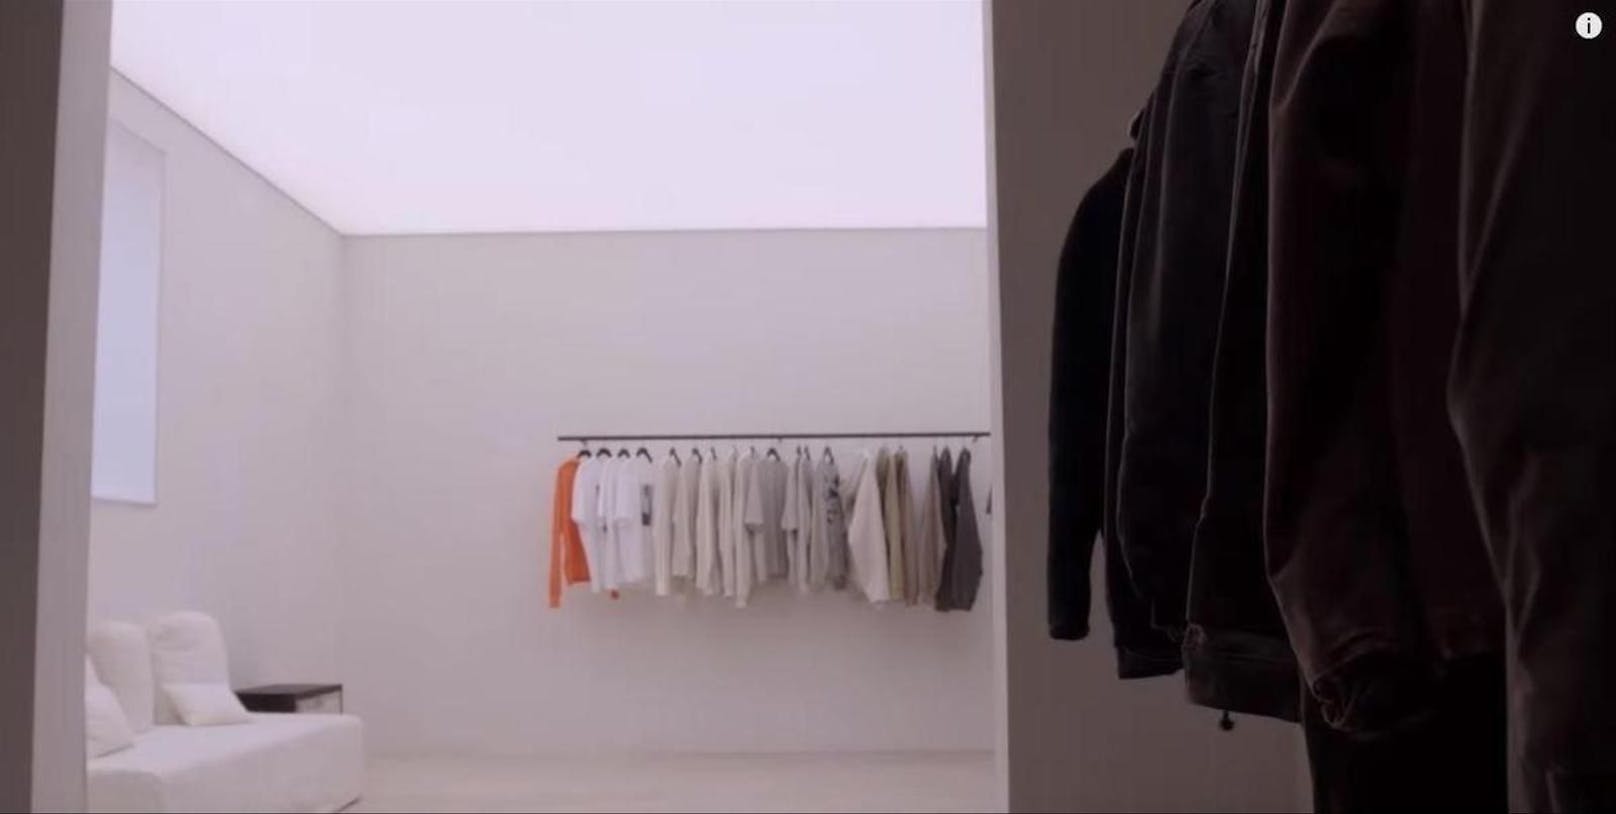 Extrem wird es im Ankleidezimmer von Kanye. Der Raum könnte genauso gut als Showroom seines Labels Yeezy durchgehen.